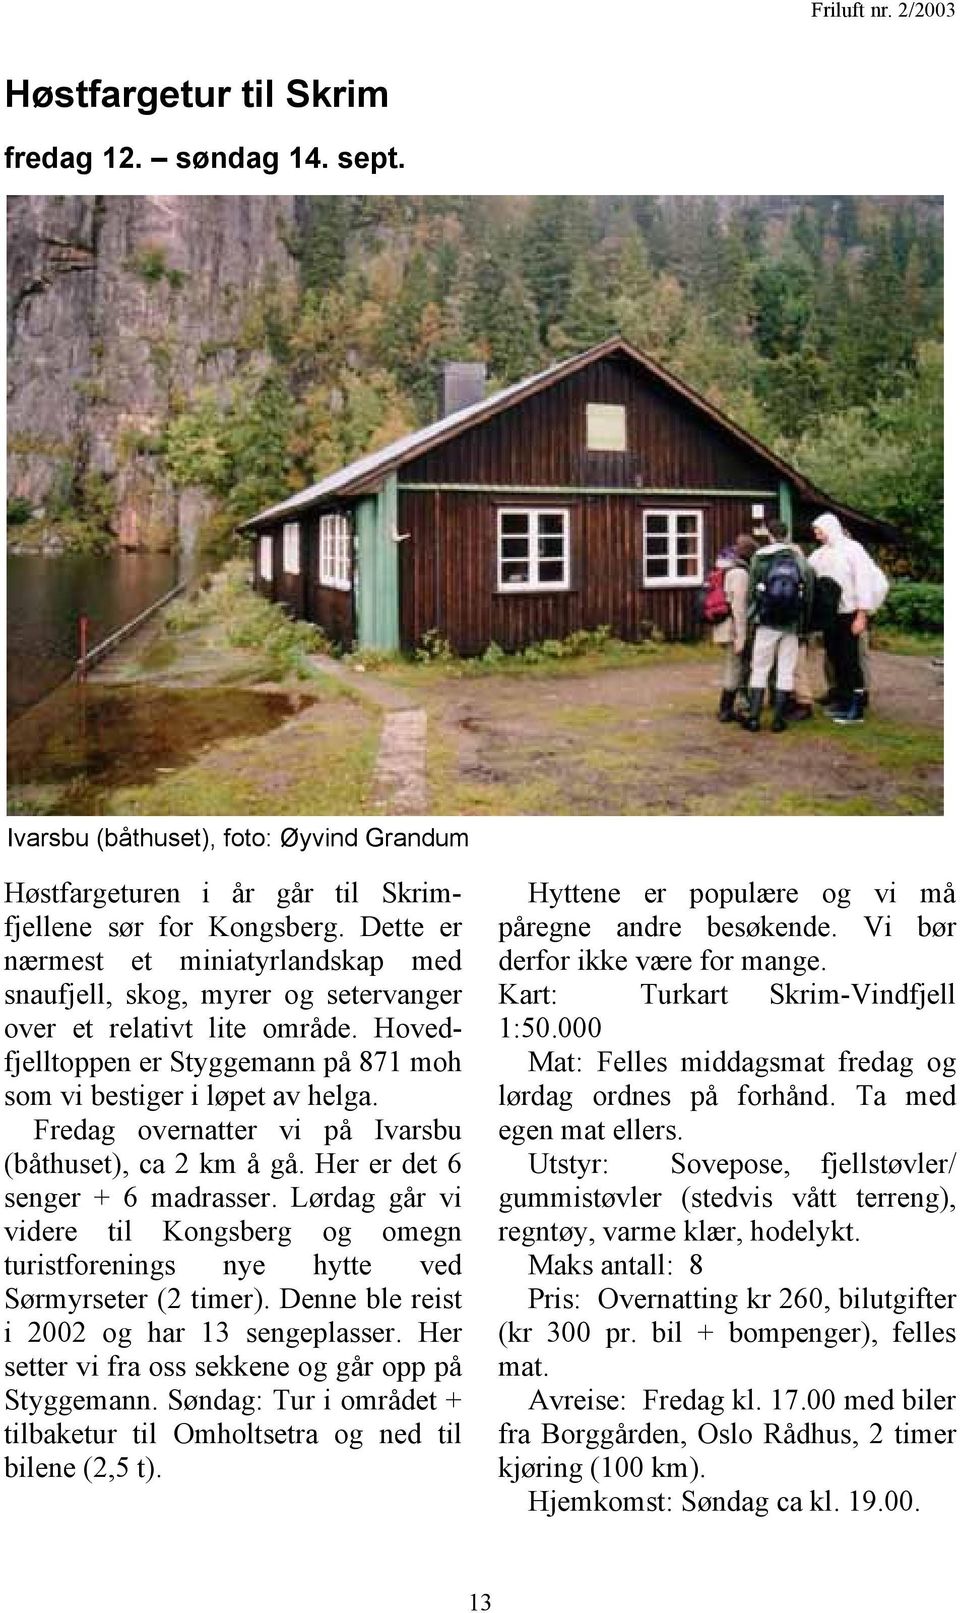 Fredag overnatter vi på Ivarsbu (båthuset), ca 2 km å gå. Her er det 6 senger + 6 madrasser. Lørdag går vi videre til Kongsberg og omegn turistforenings nye hytte ved Sørmyrseter (2 timer).